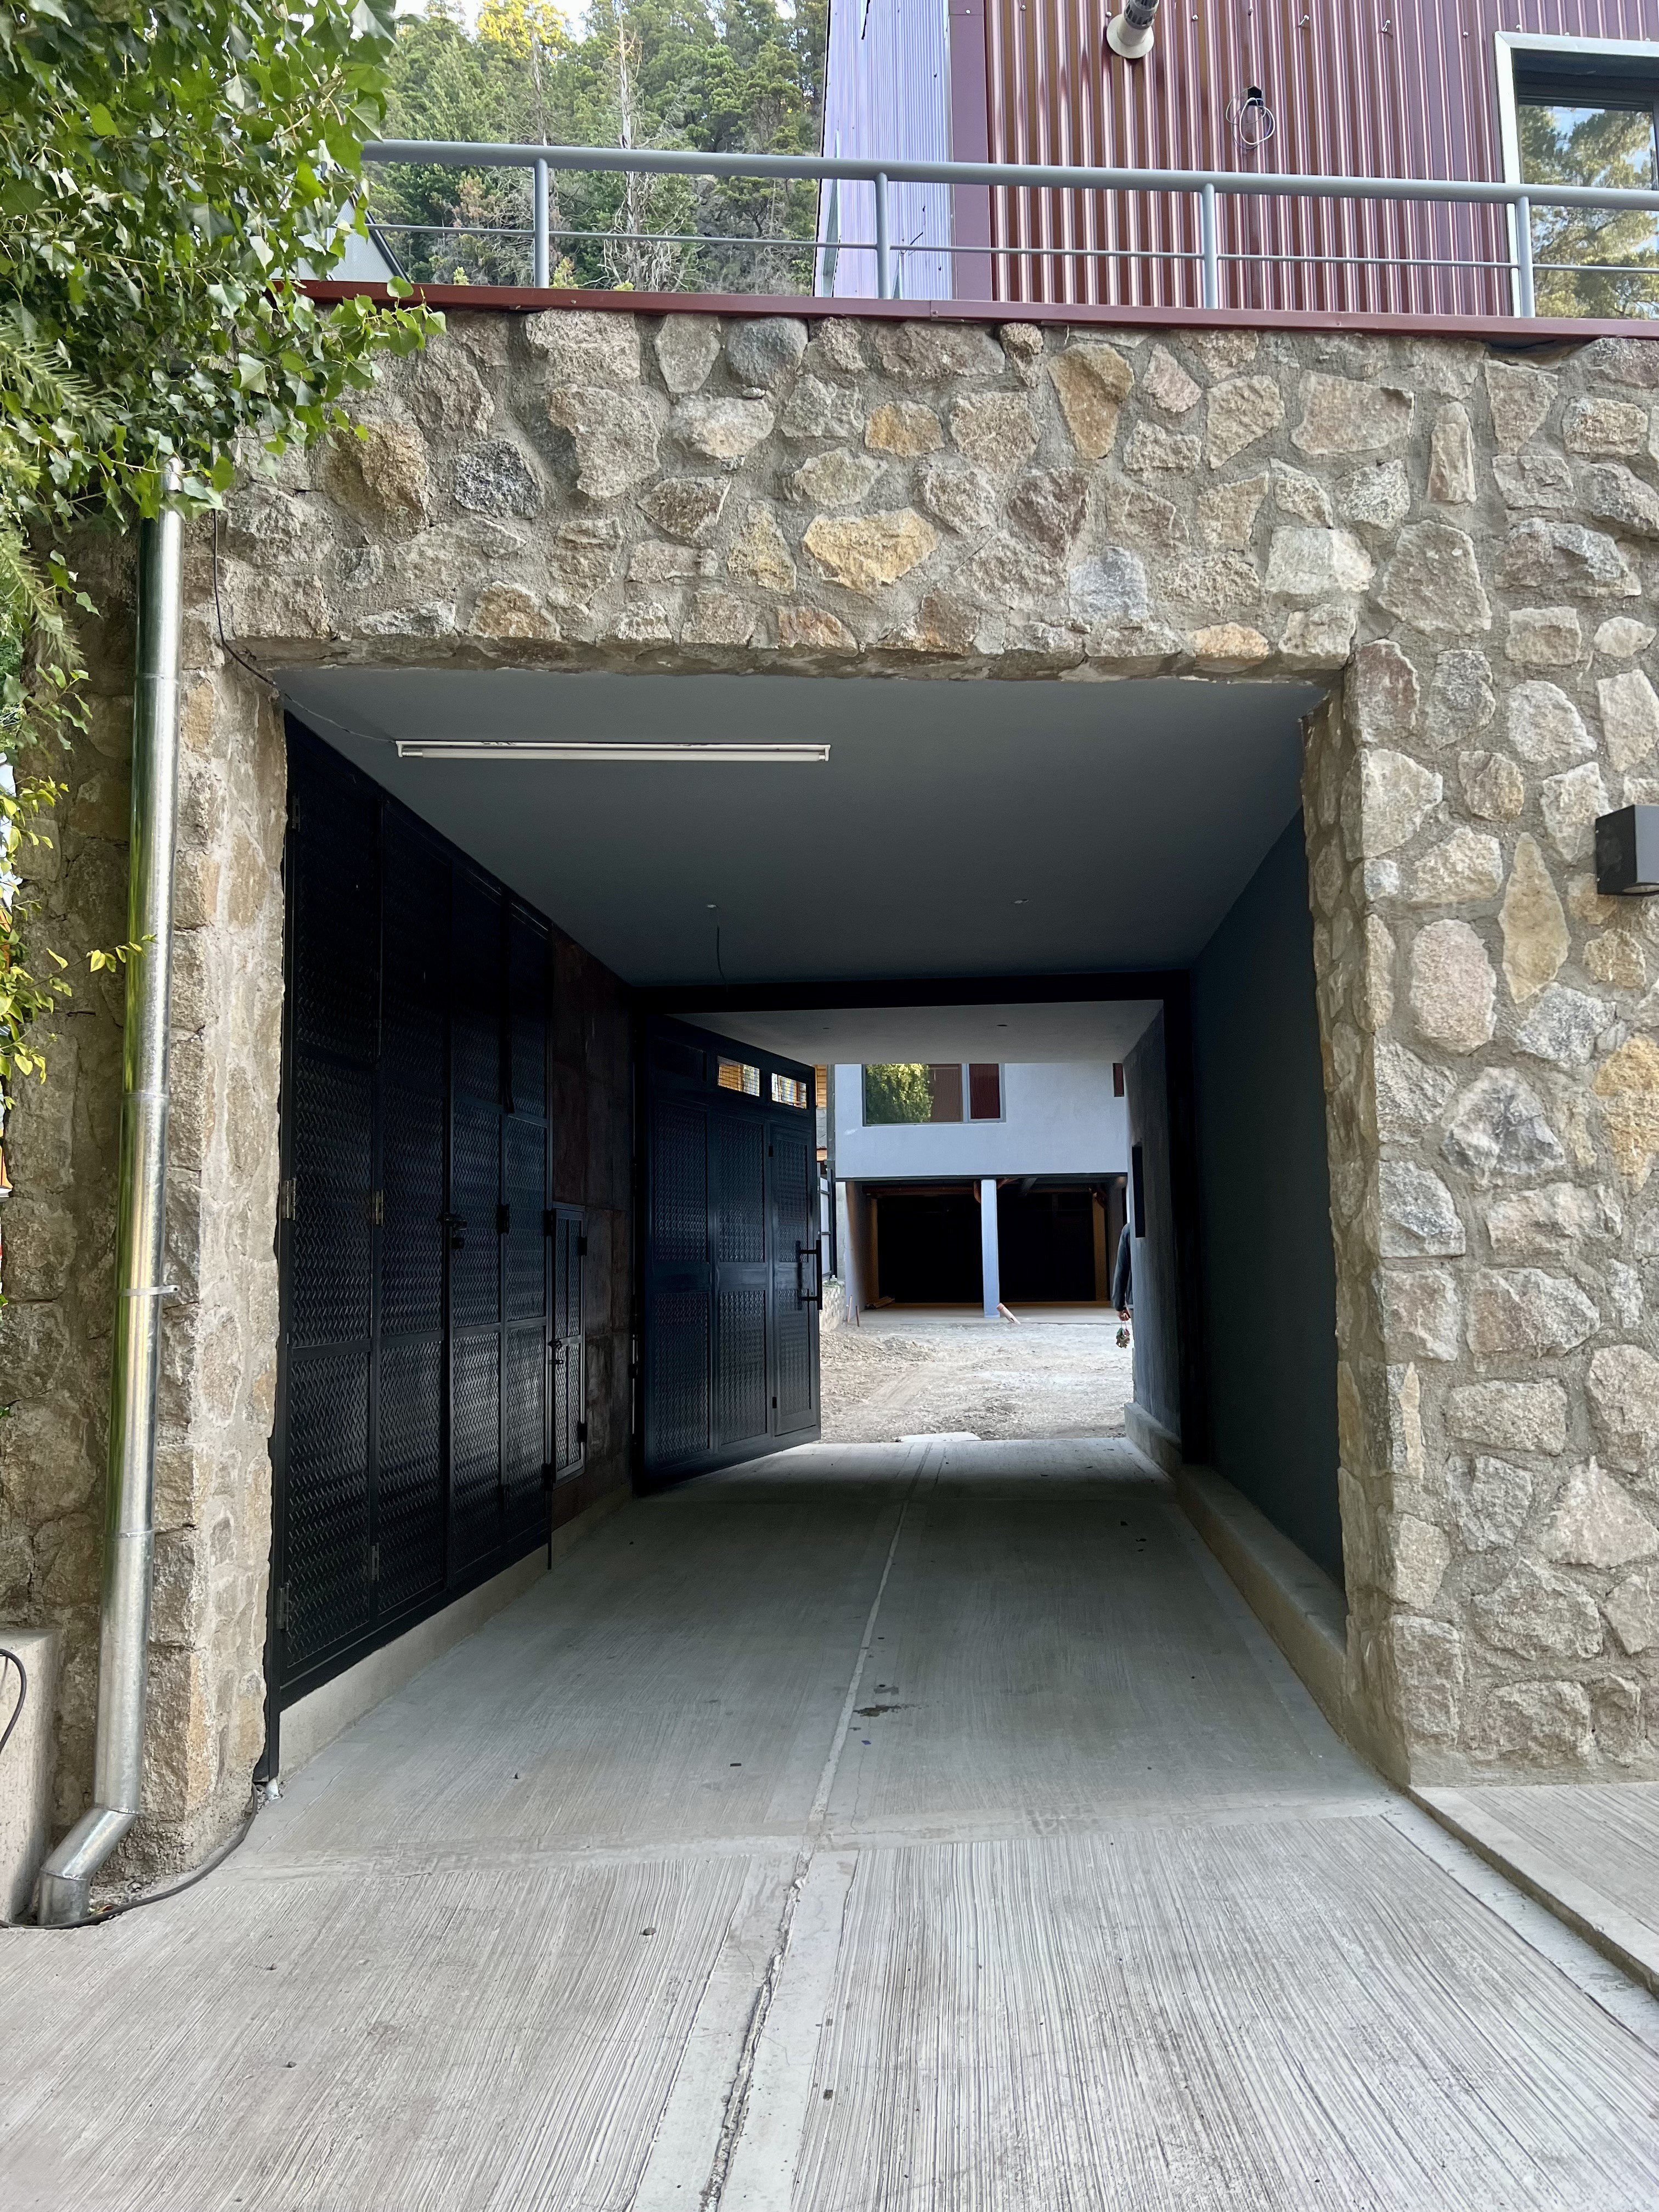 D213 - Departamento a estrenar de 1 dormitorio 56mts - Bajada de los Andes - Zona Centro